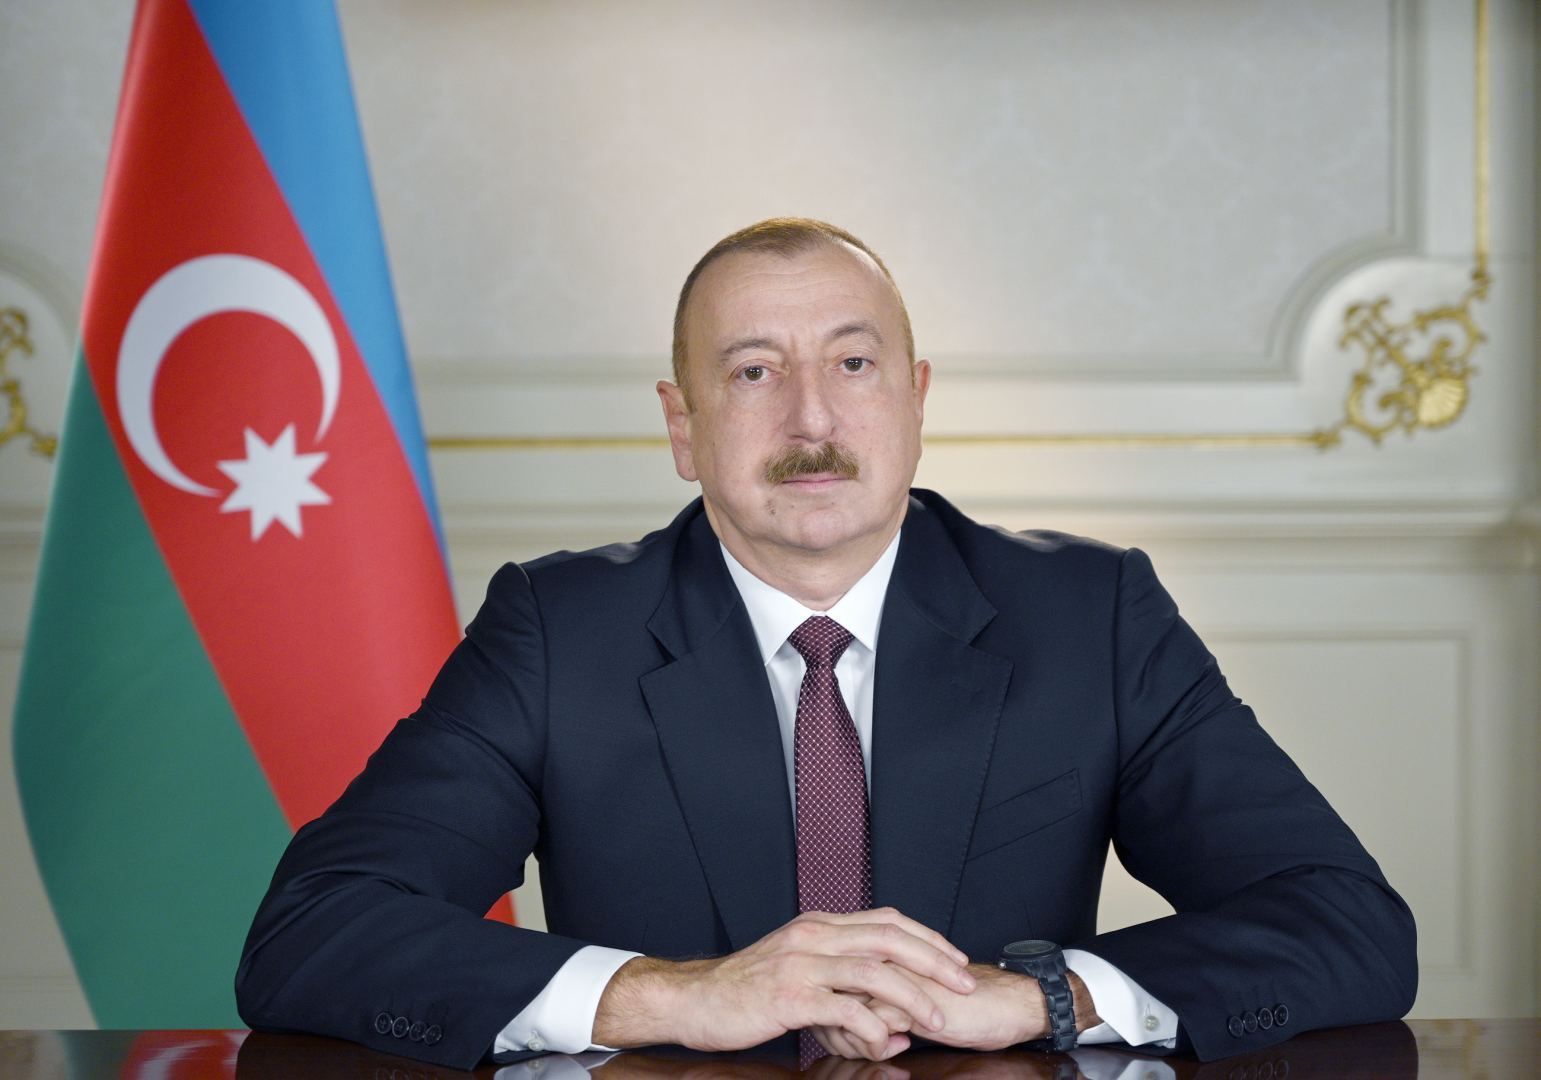 Photo of Prezident Azerbajdžanu poslal prezidentovi Slovenska blahoprajný list